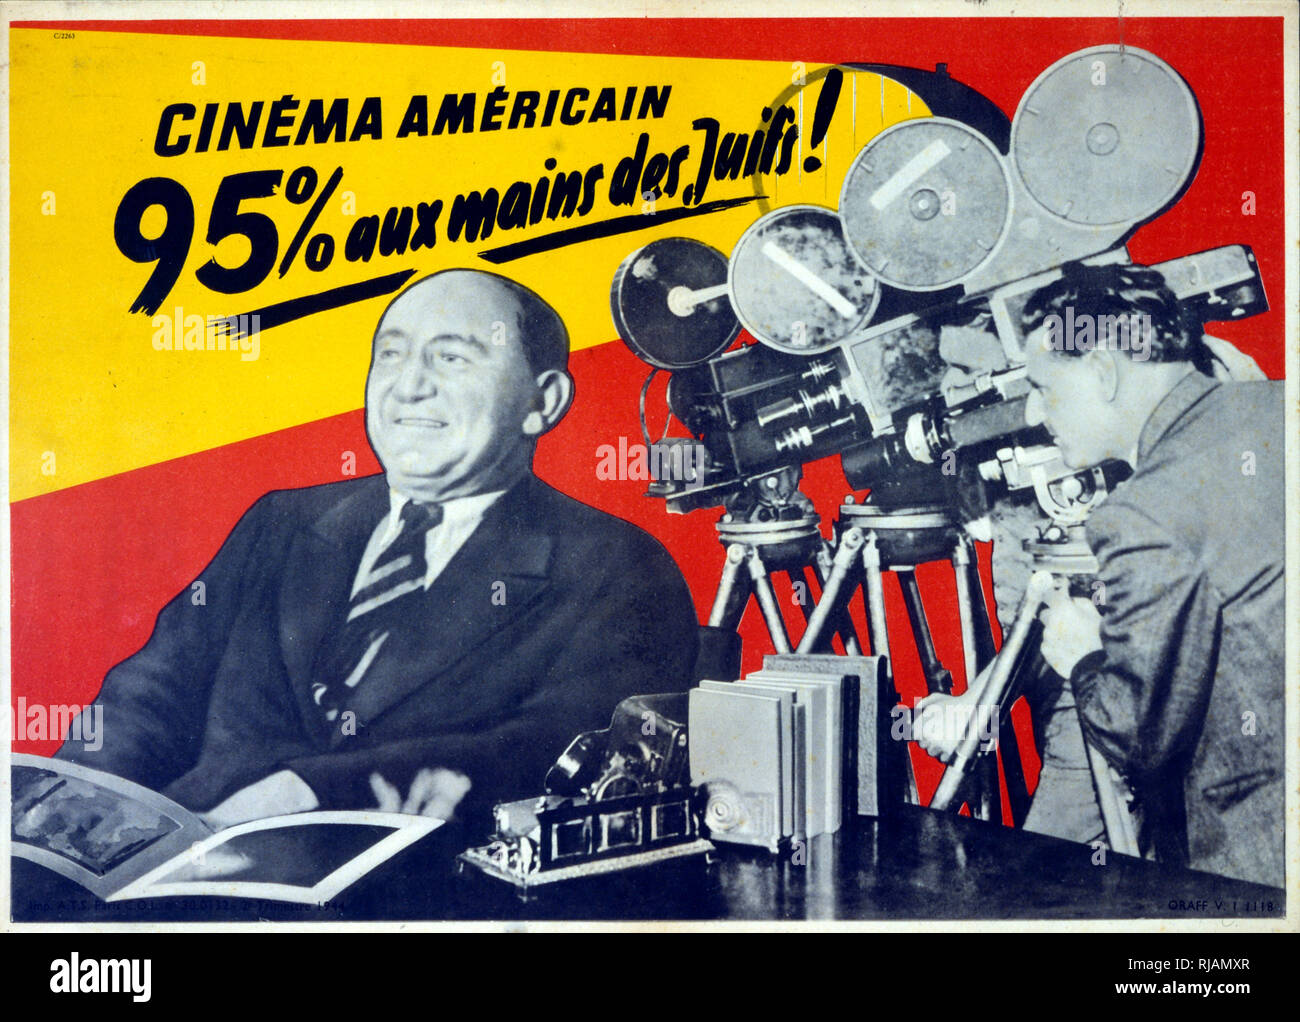 La Seconde Guerre mondiale affiche de propagande nazie de la France occupée. Déclarant que 95 % de l'industrie cinématographique américaine, est contrôlée par les Juifs Banque D'Images